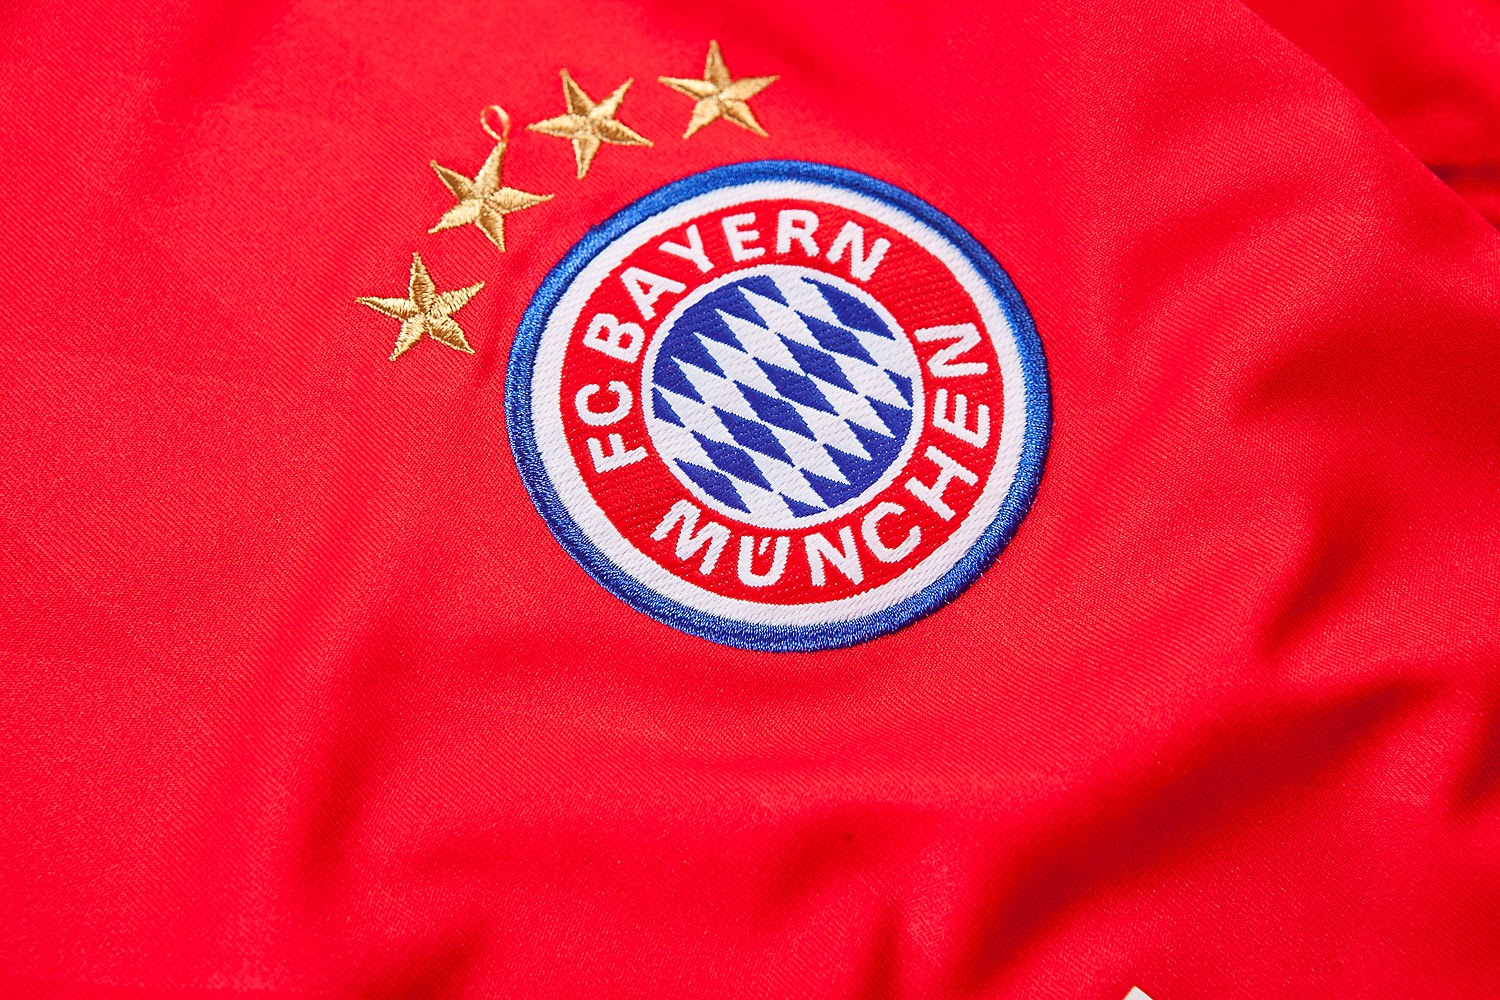 Equipaciones de futbol baratas 2015 online: nueva camisetas de futbol Bayern Munich 2014 baratas